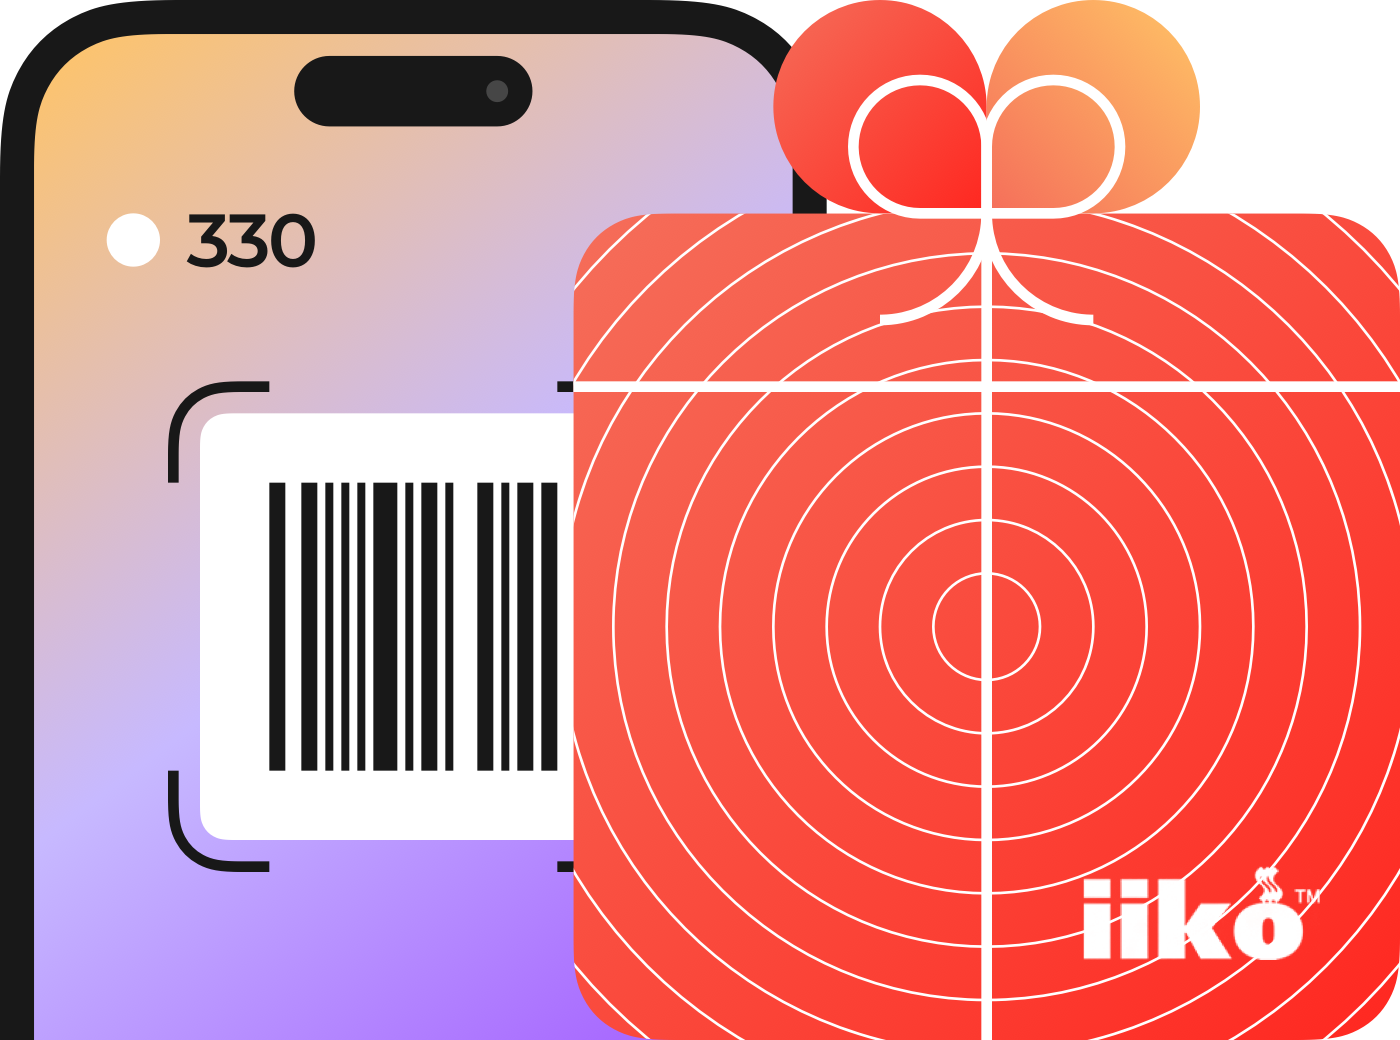 Виртуальная карта лояльности iikoCard в мобильном приложении ресторана